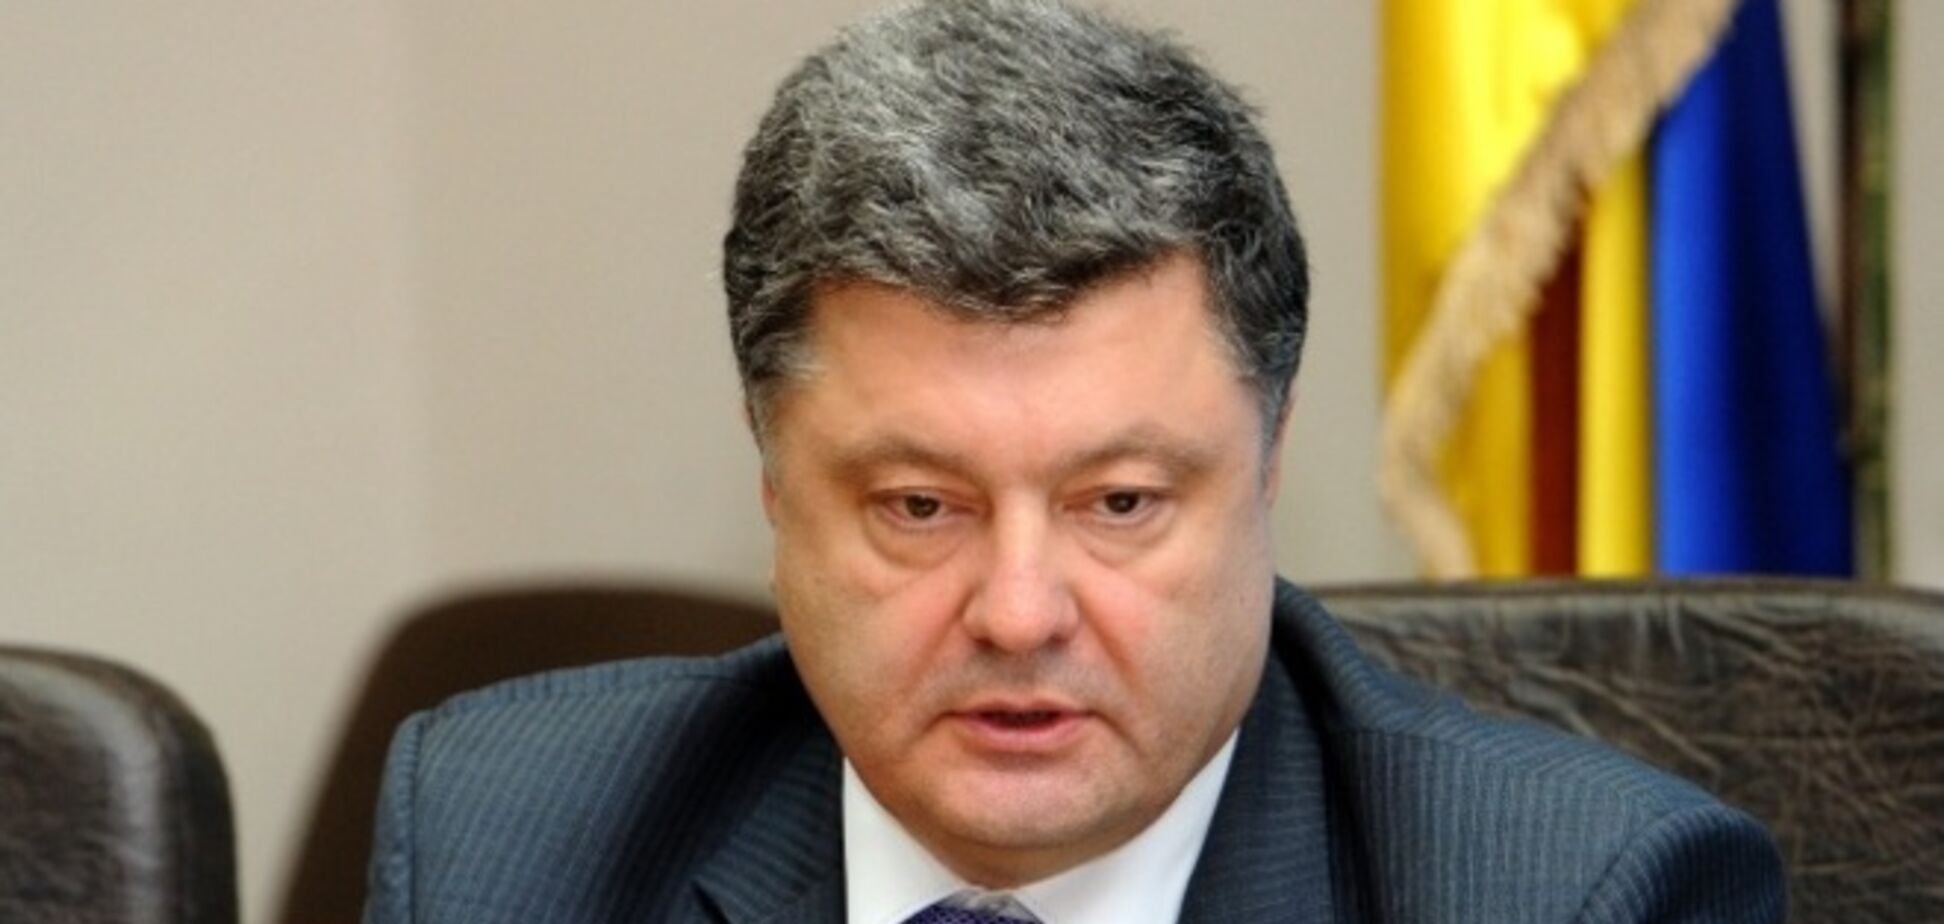 Политологи раскритиковали объяснение Порошенко по поводу закона о Донбассе